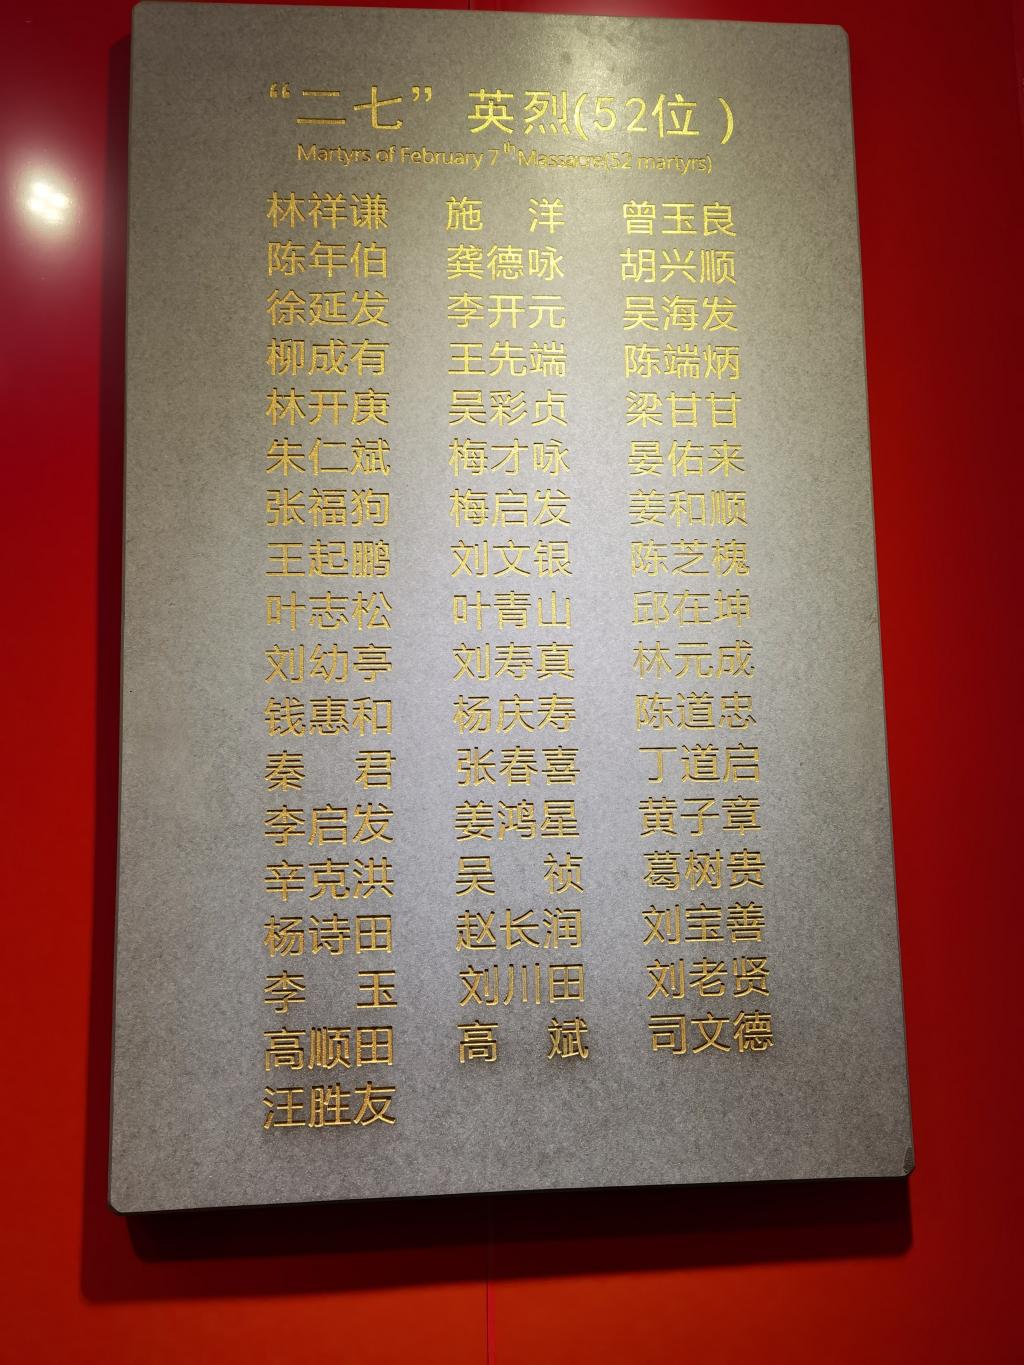 二七英烈名单有关二七的笔记和茶缸工人纠察队的袖章郑州烈士陵园